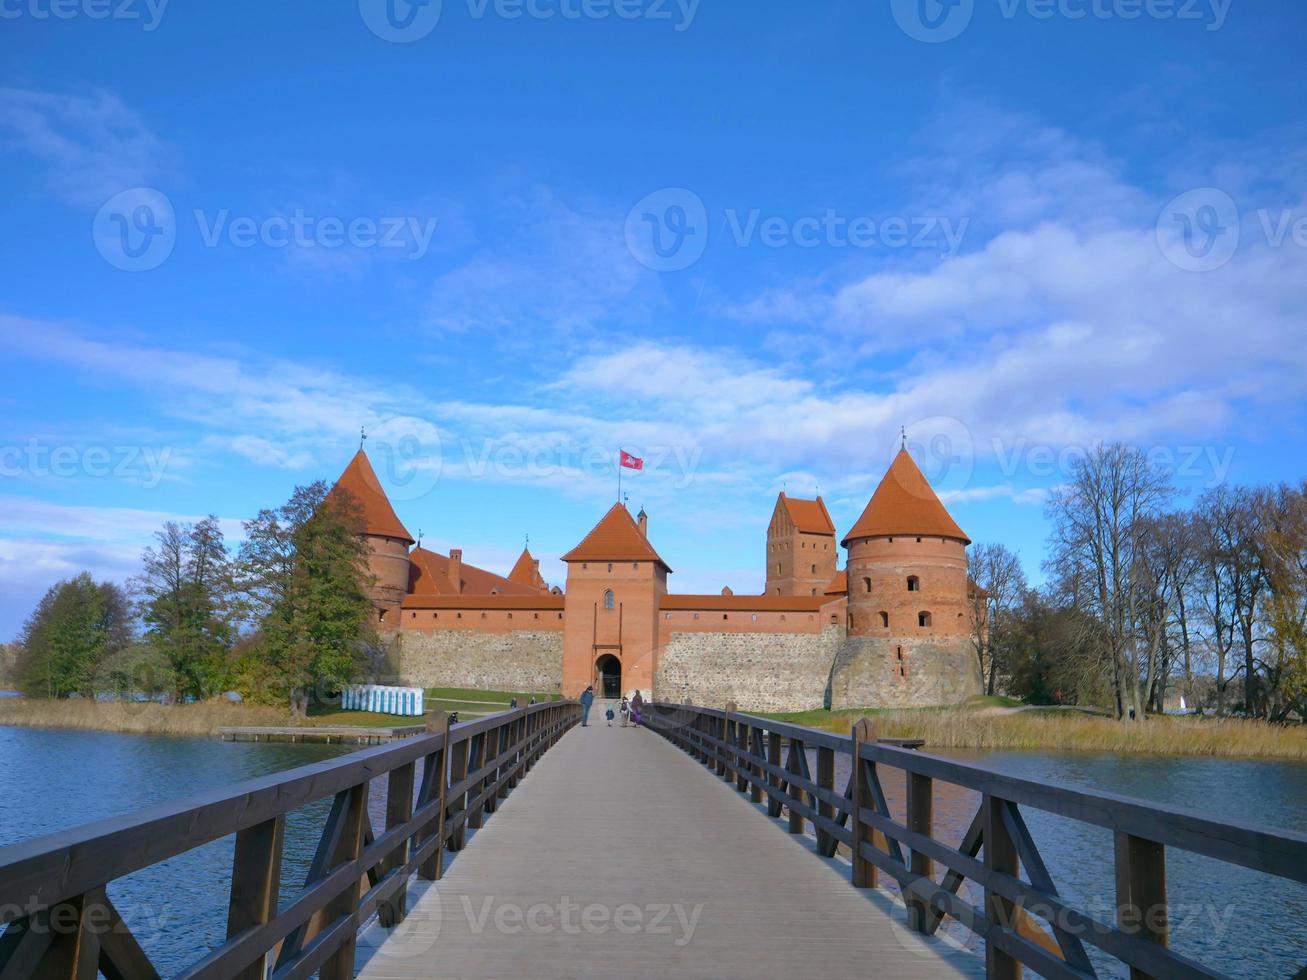 castelo trakai e ponte de madeira antes dos portões, lituânia foto